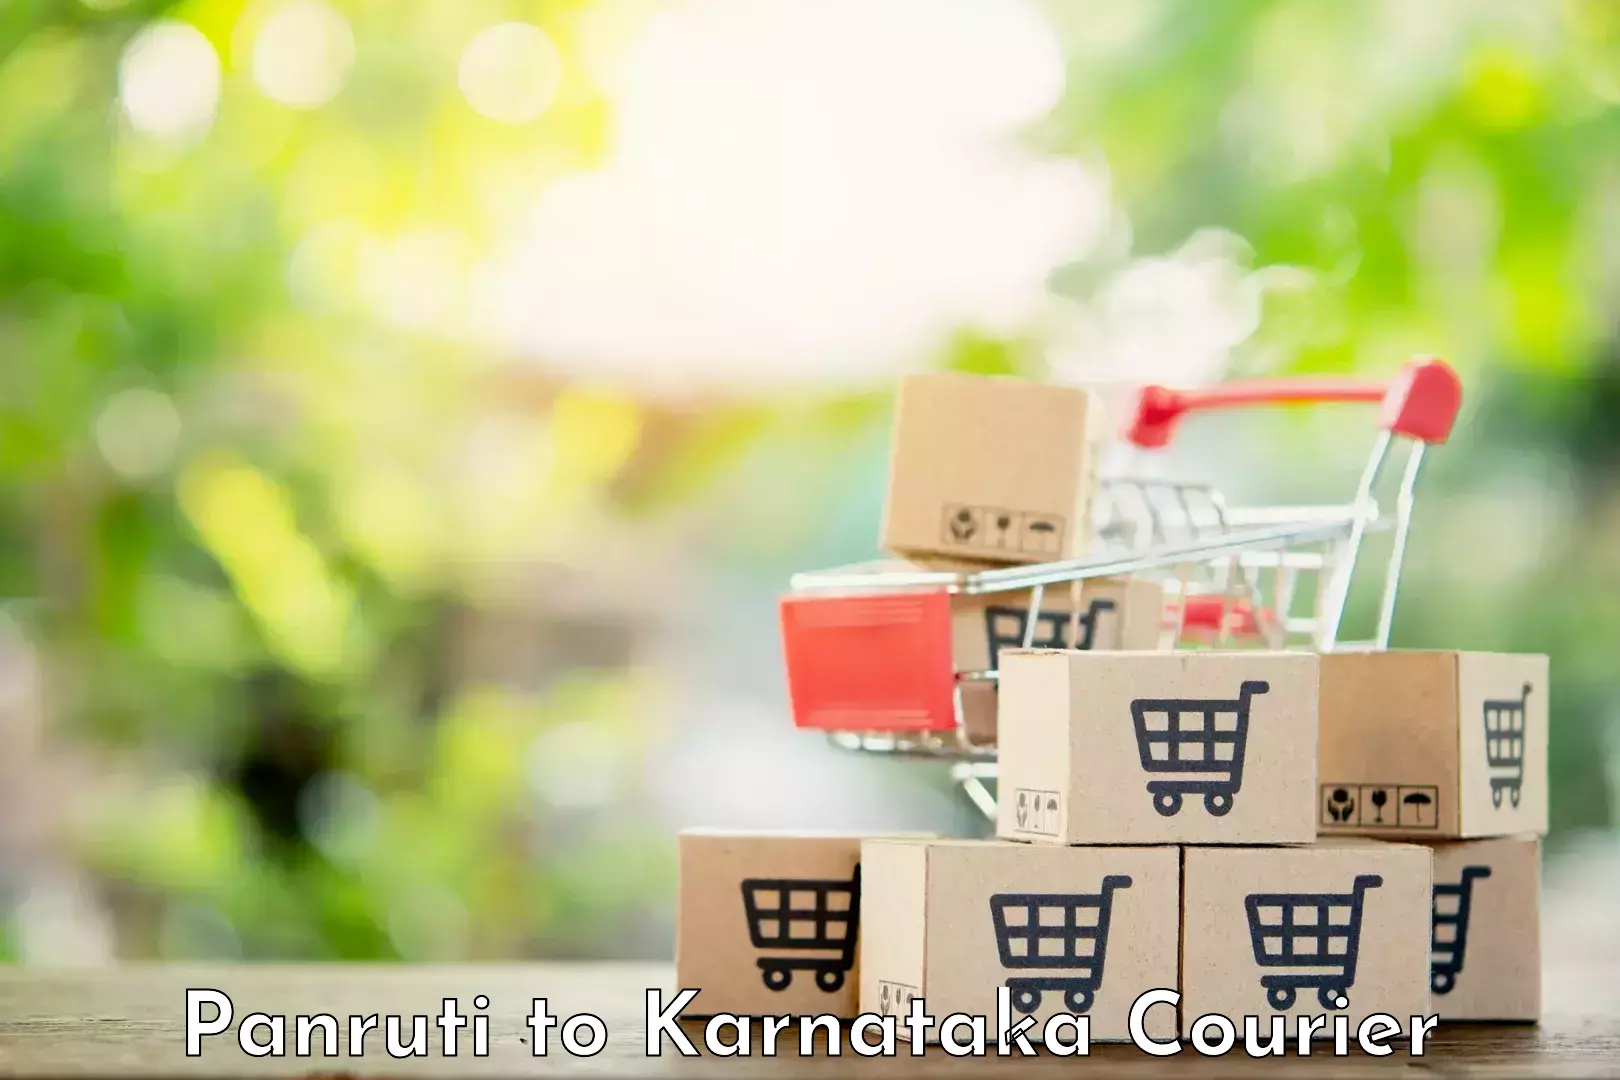 Same-day delivery options Panruti to Karnataka